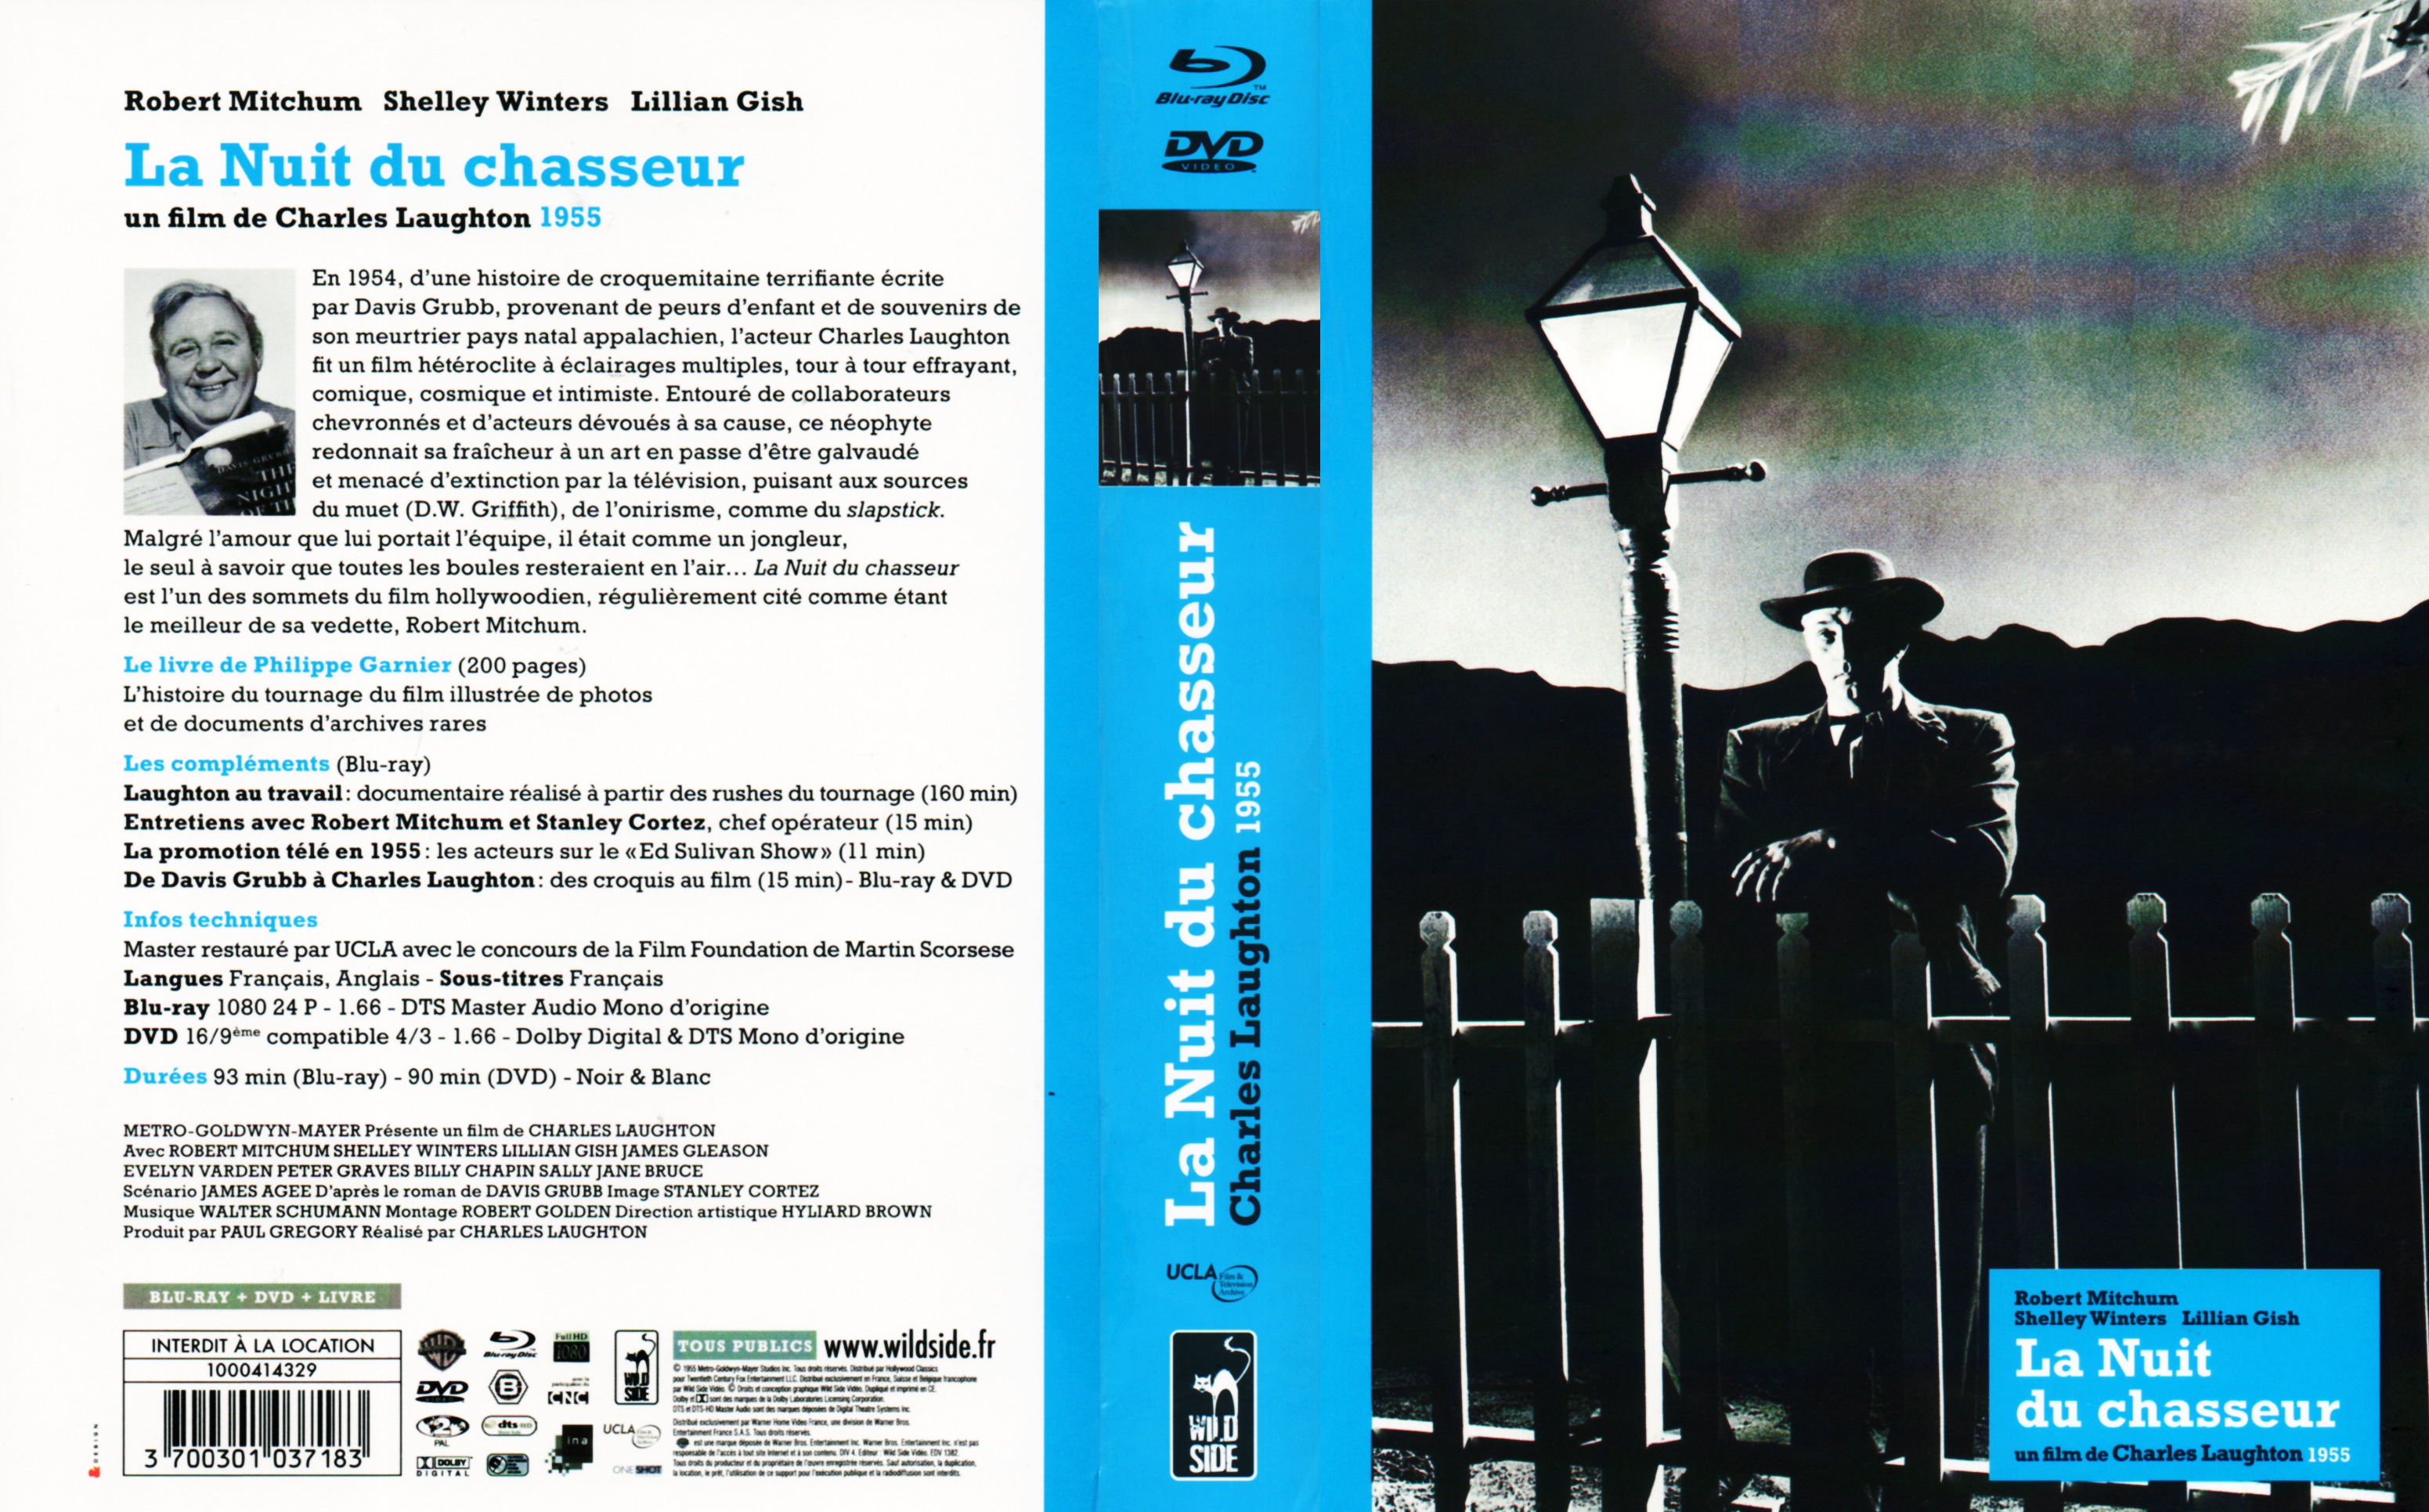 Jaquette DVD La nuit du chasseur (BLU-RAY)